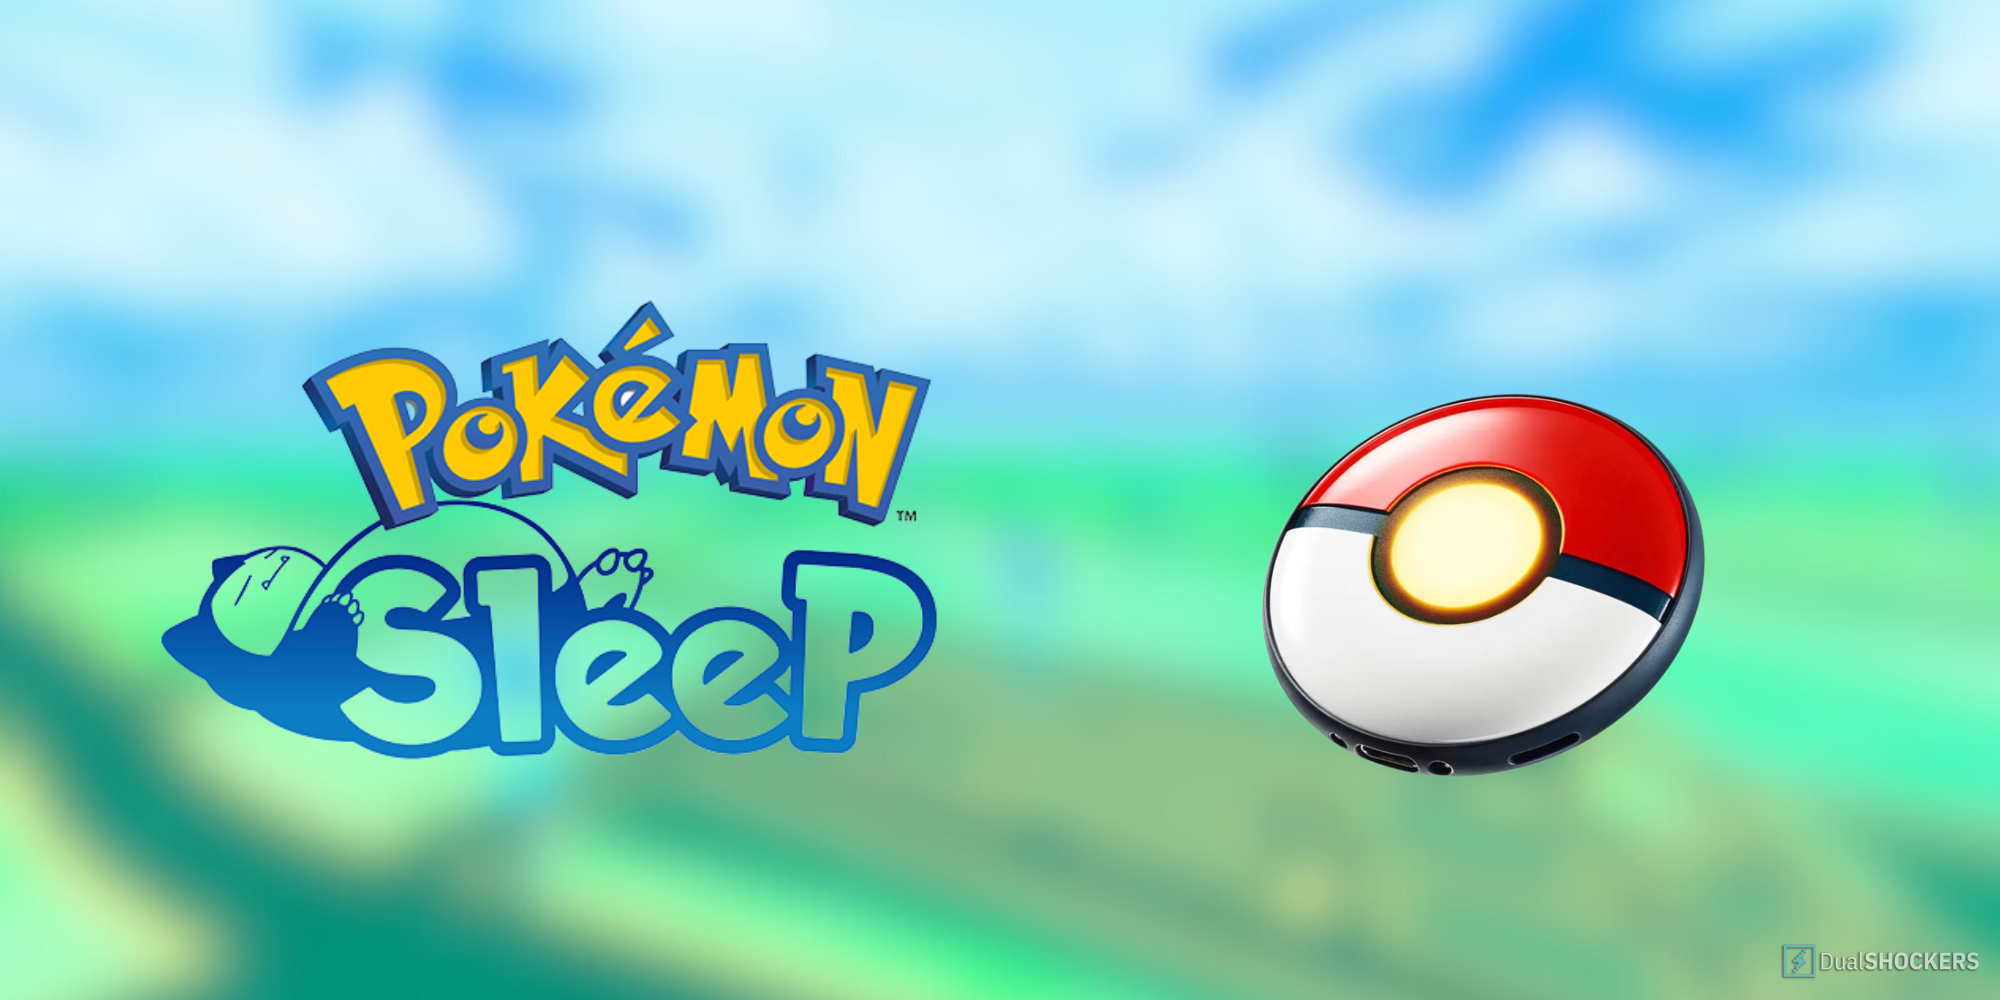 Pokemon Sleep Tracking Sleep